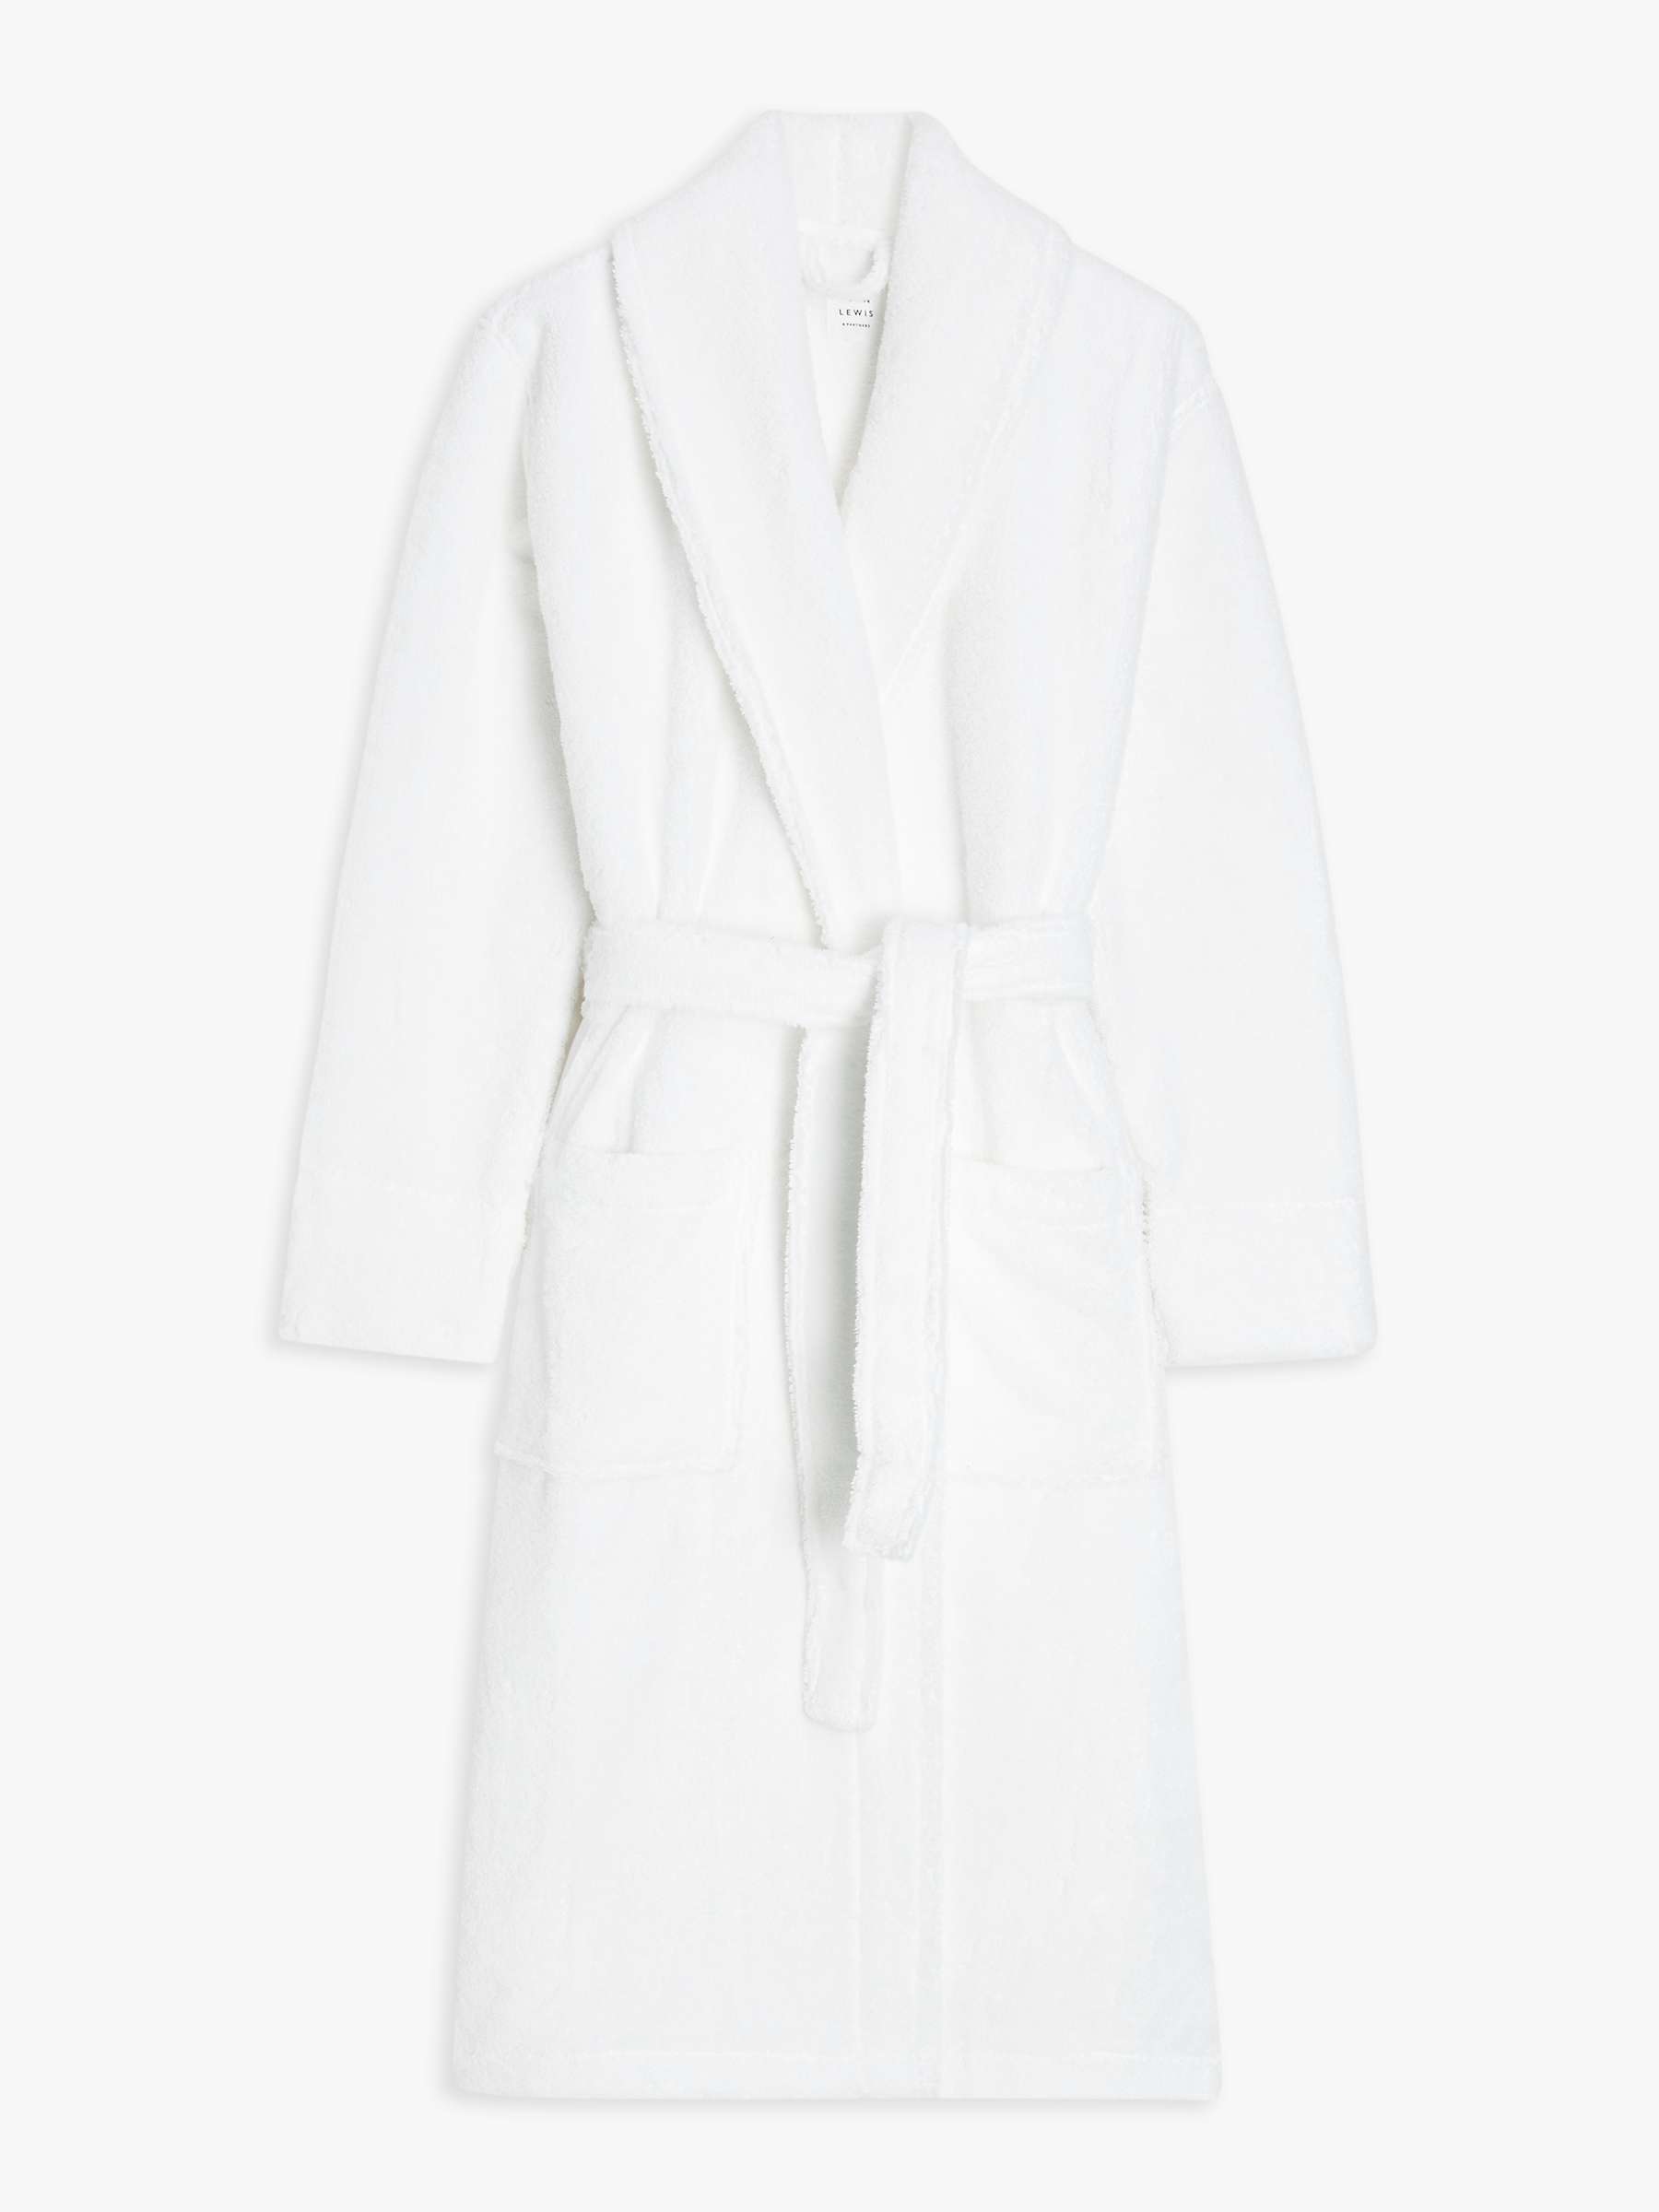 John Lewis Luxury Towelling Robe, White at John Lewis & Partners